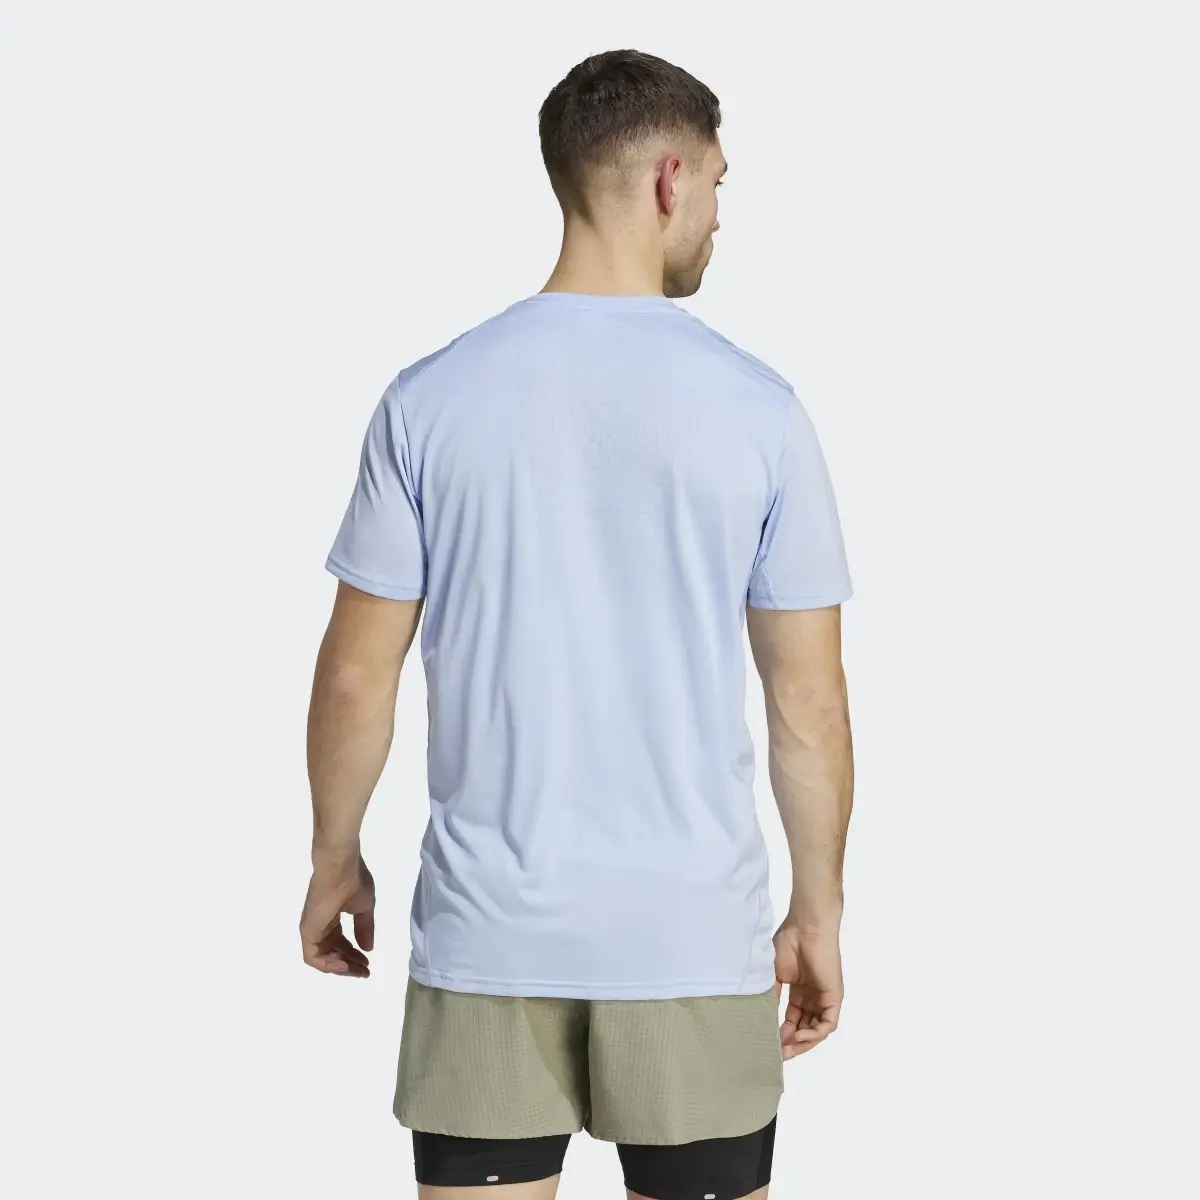 Adidas Confident Engineered T-Shirt. 3